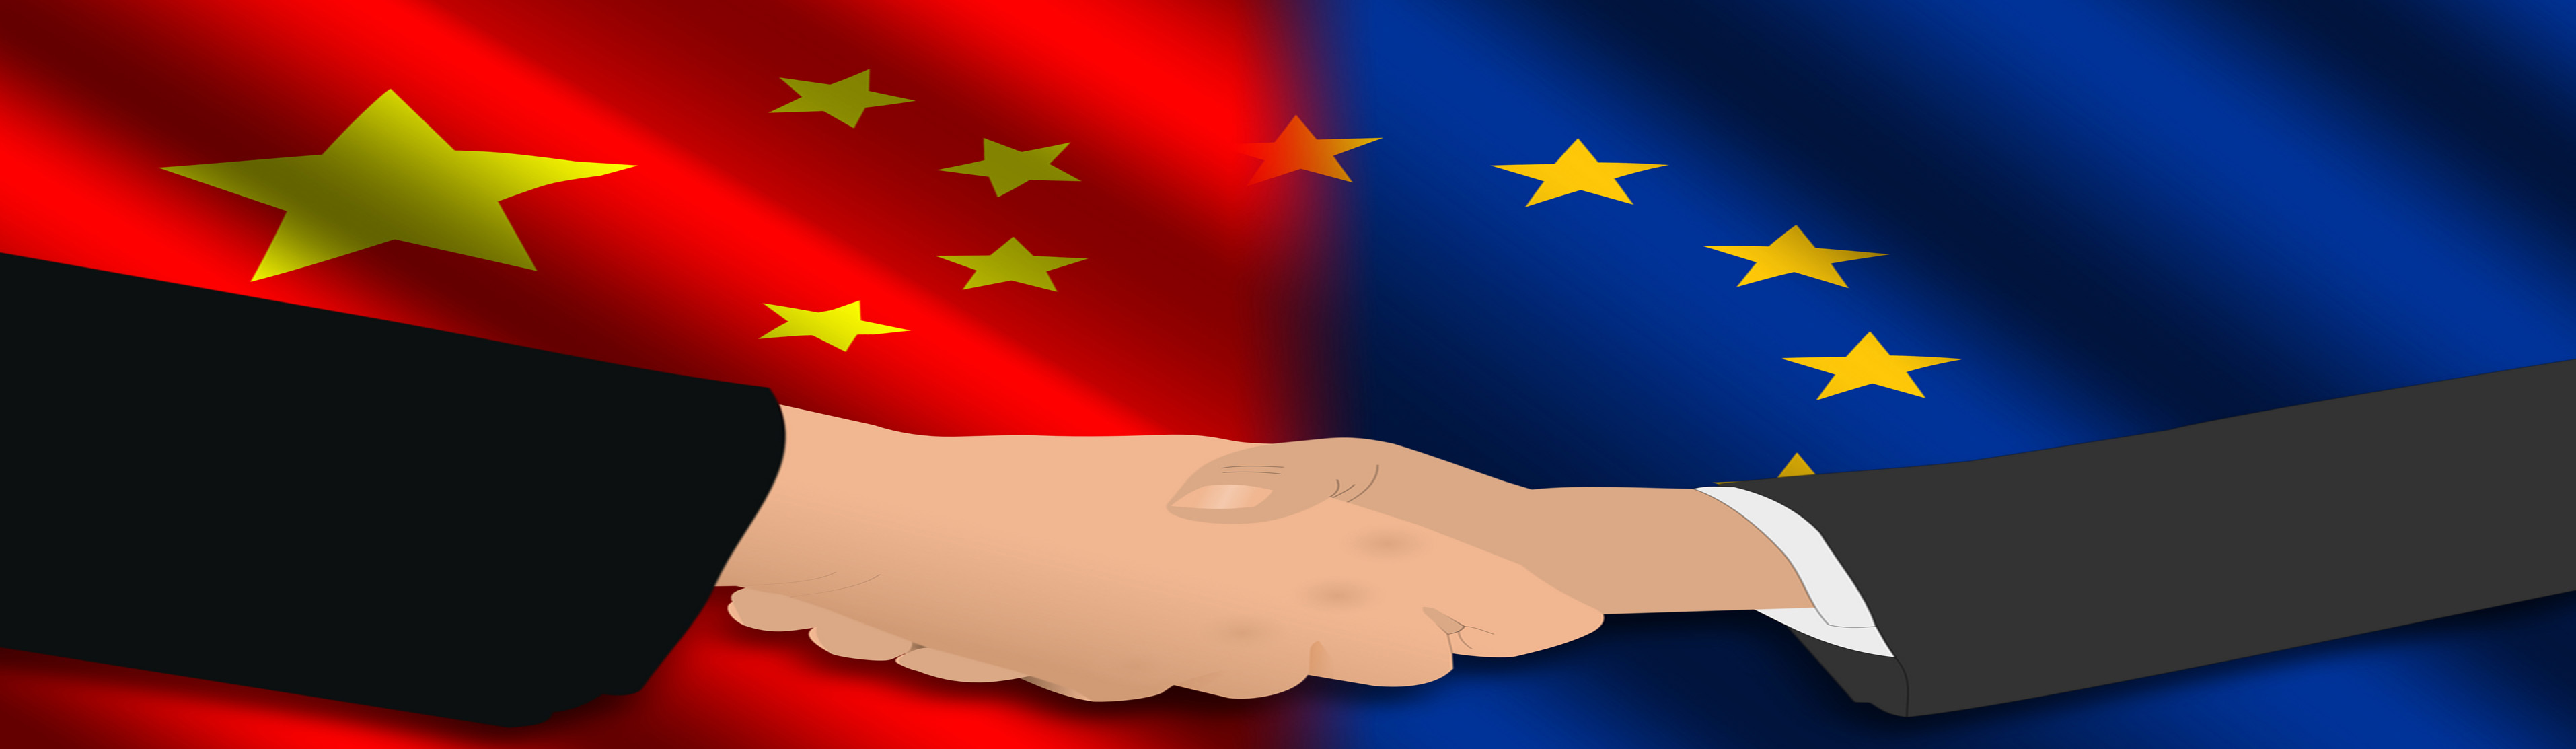 Cina-Europa-20160713193612